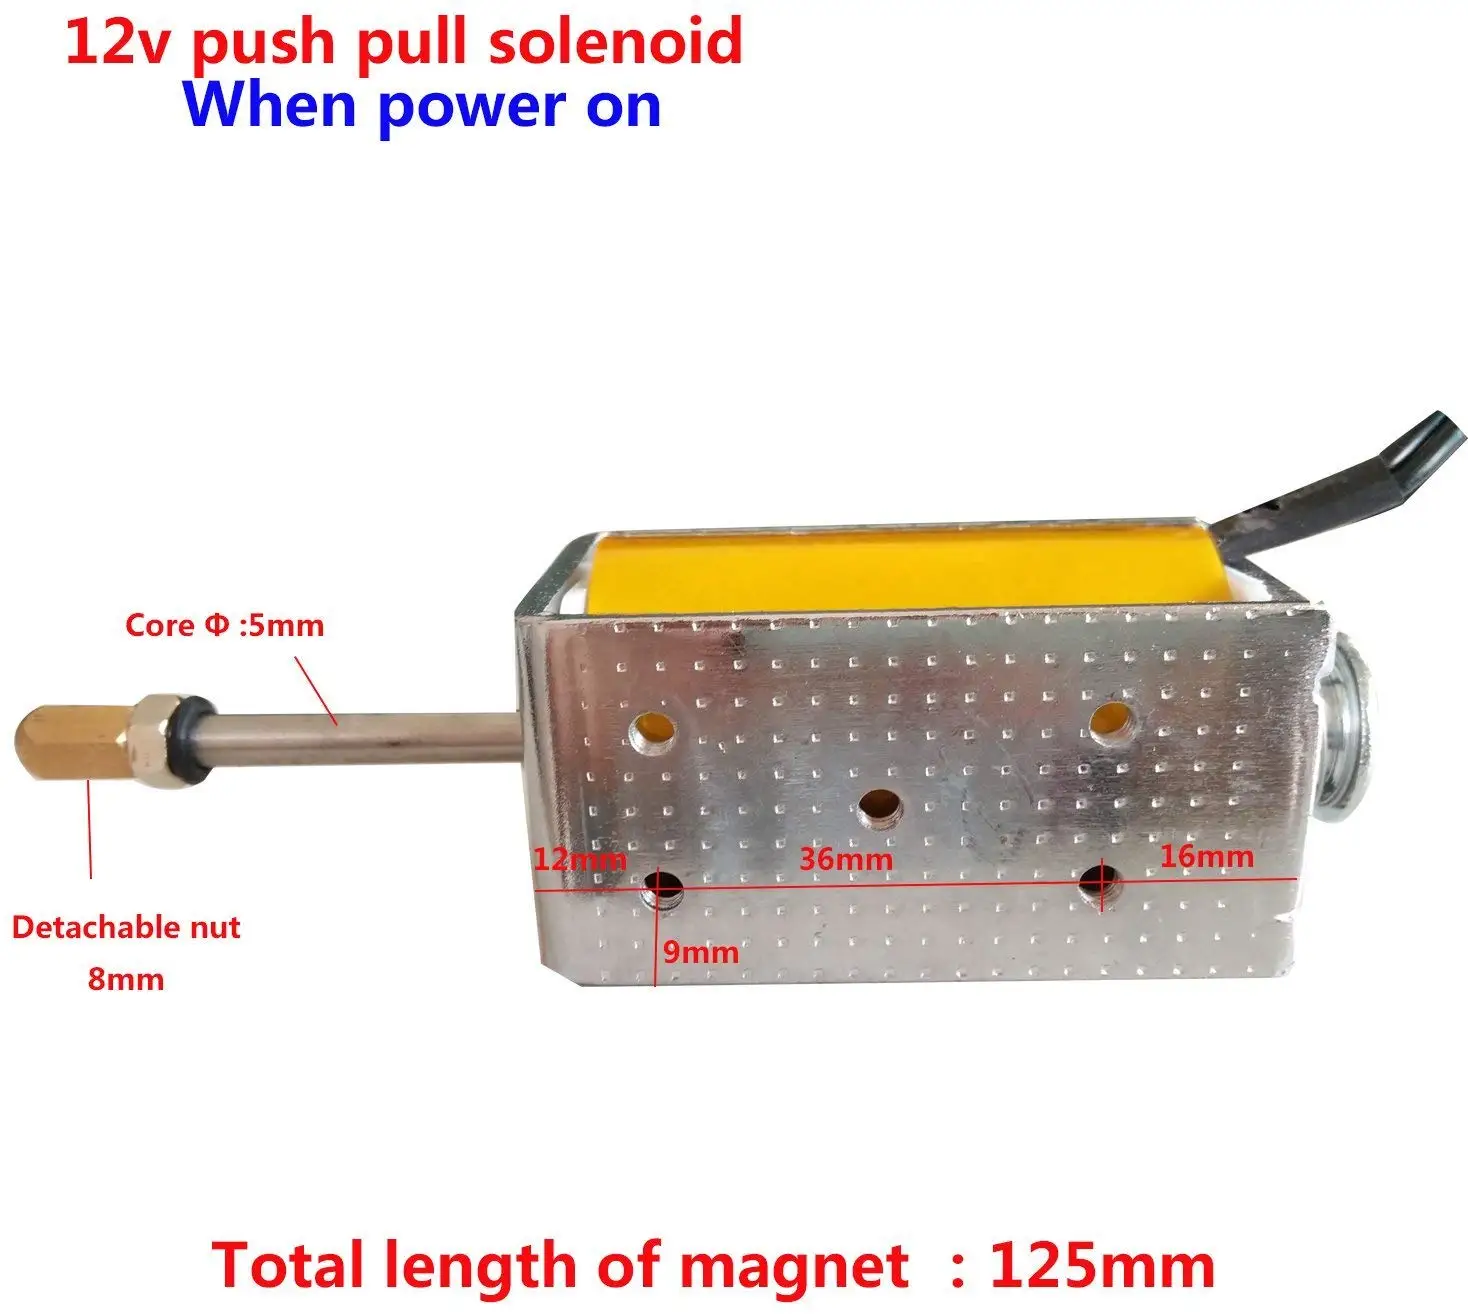 
HomTR DC 12v 24v 35mm long stroke push pull open frame electric solenoid small electromagnet 